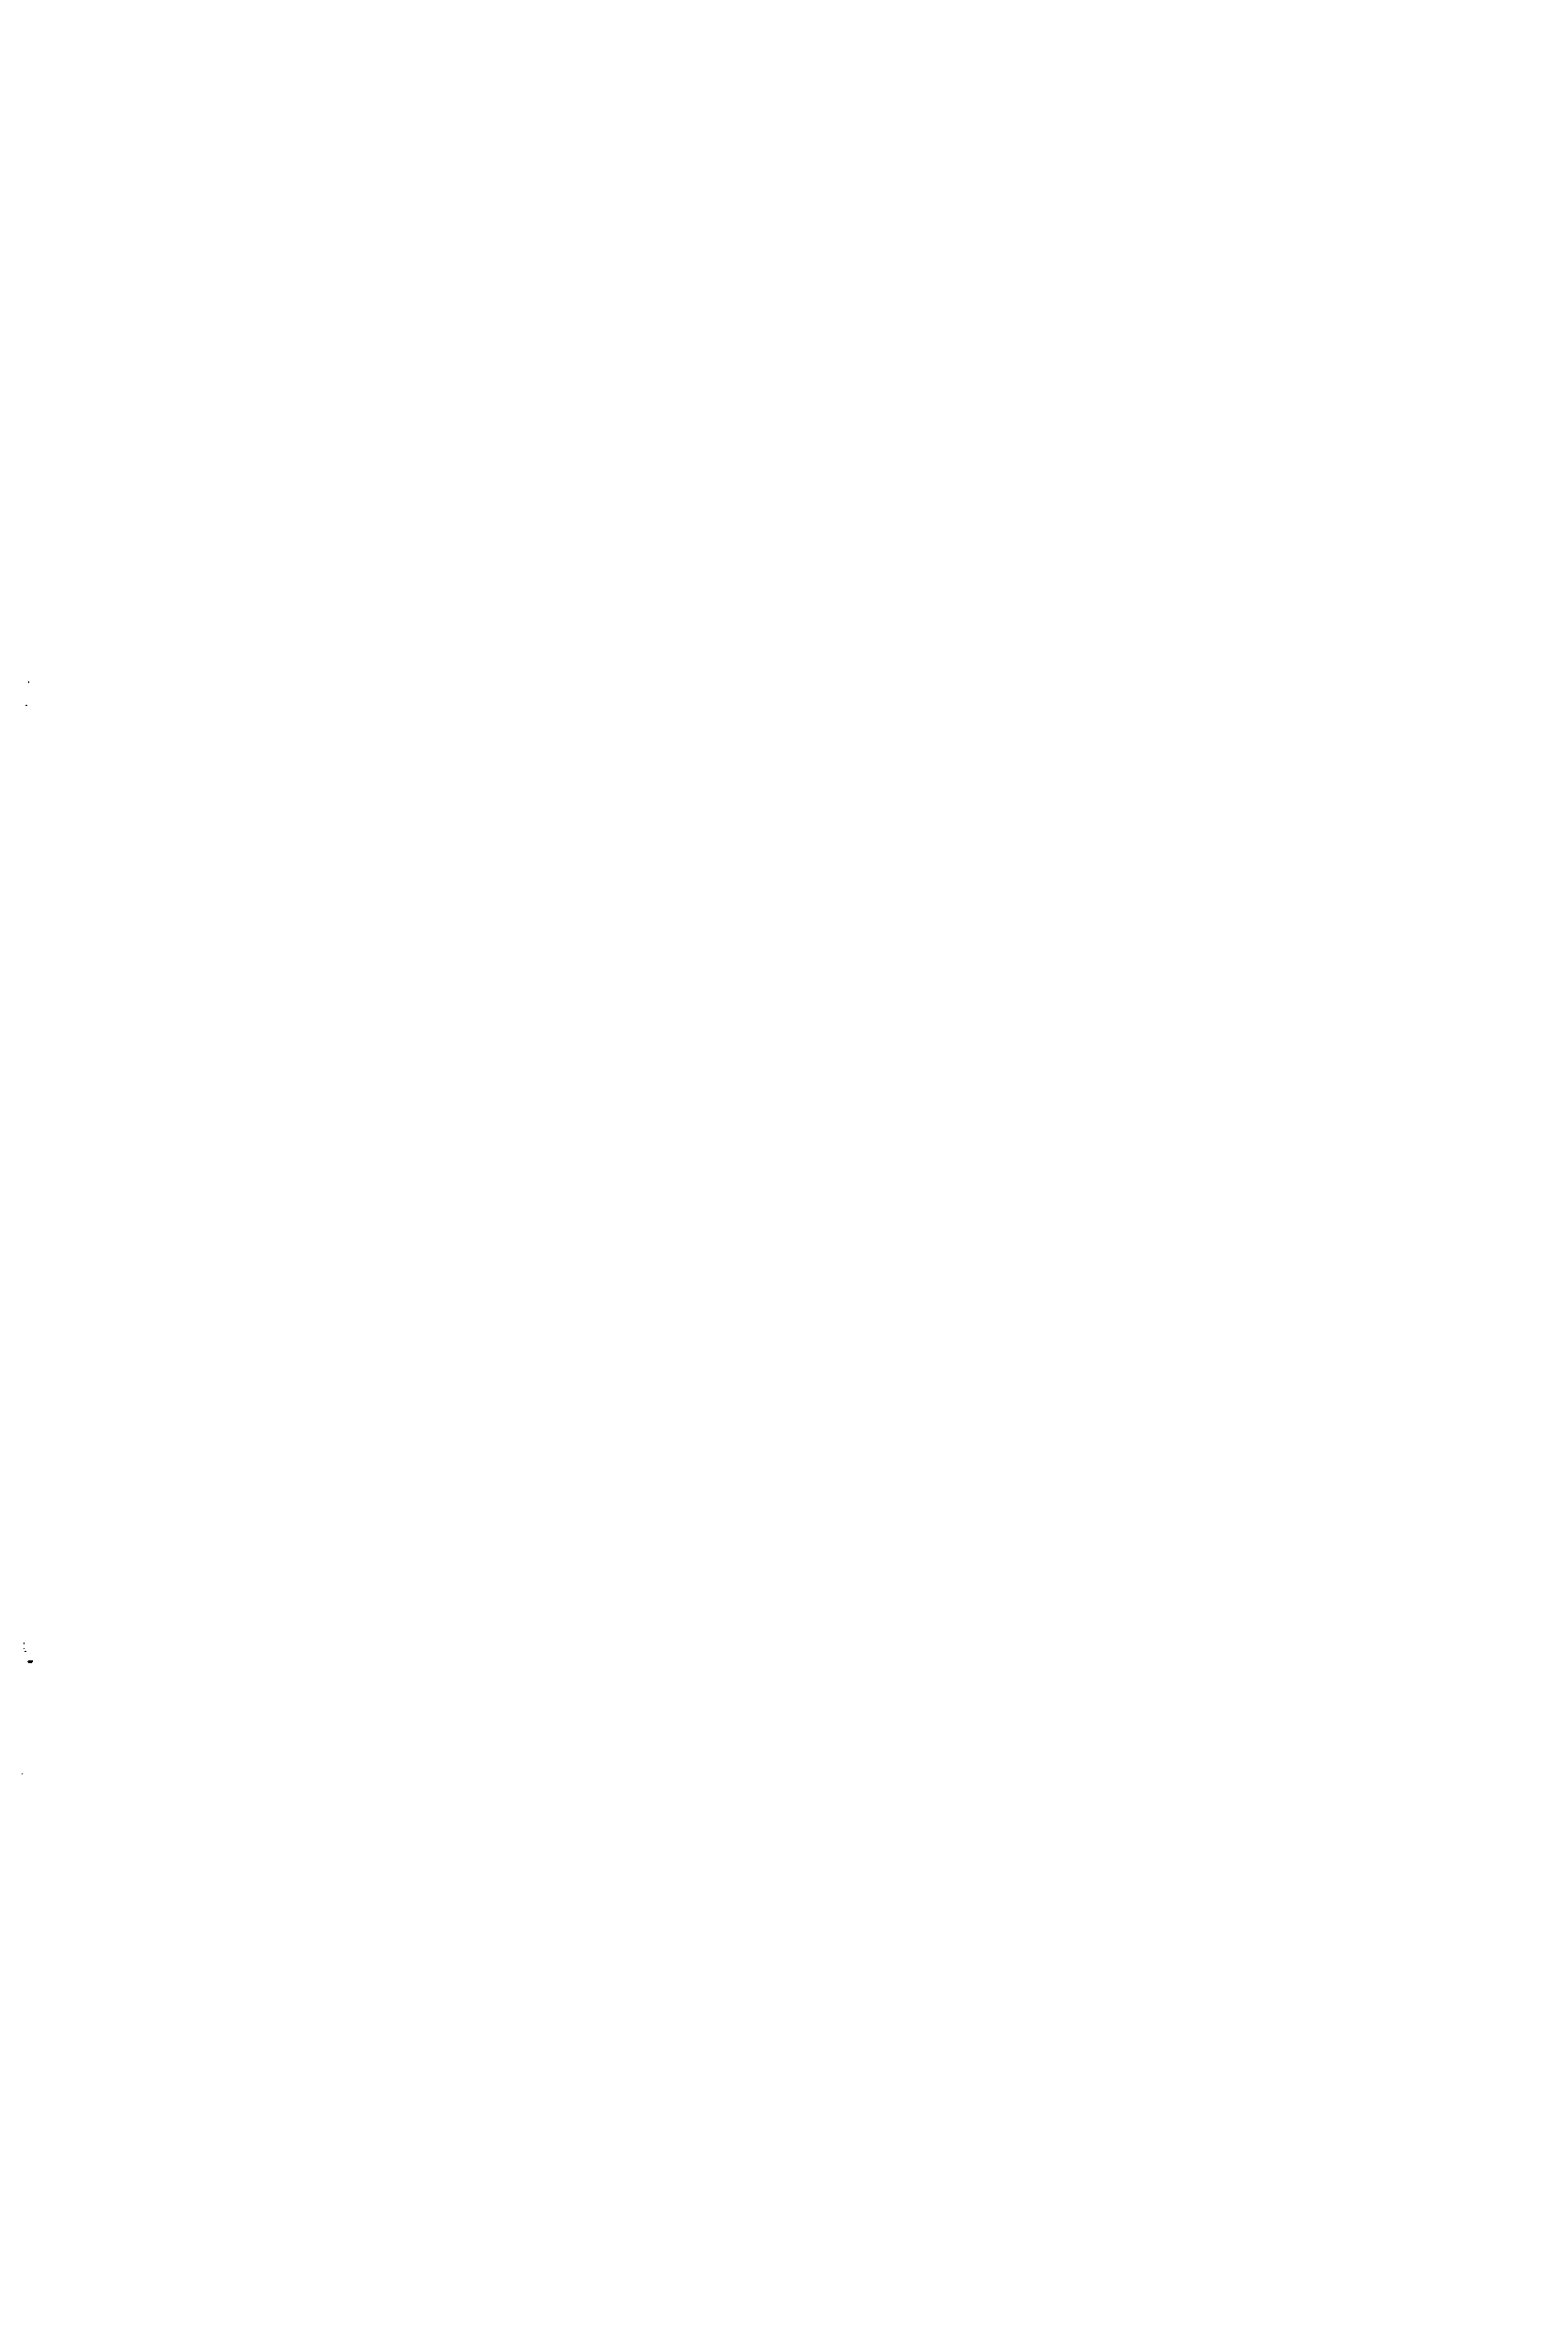 Рис. 10.27. Легко задвигающийся коррозионный стенд для испытаний в условиях работающего оборудования (Диллон и др. [246]) 
